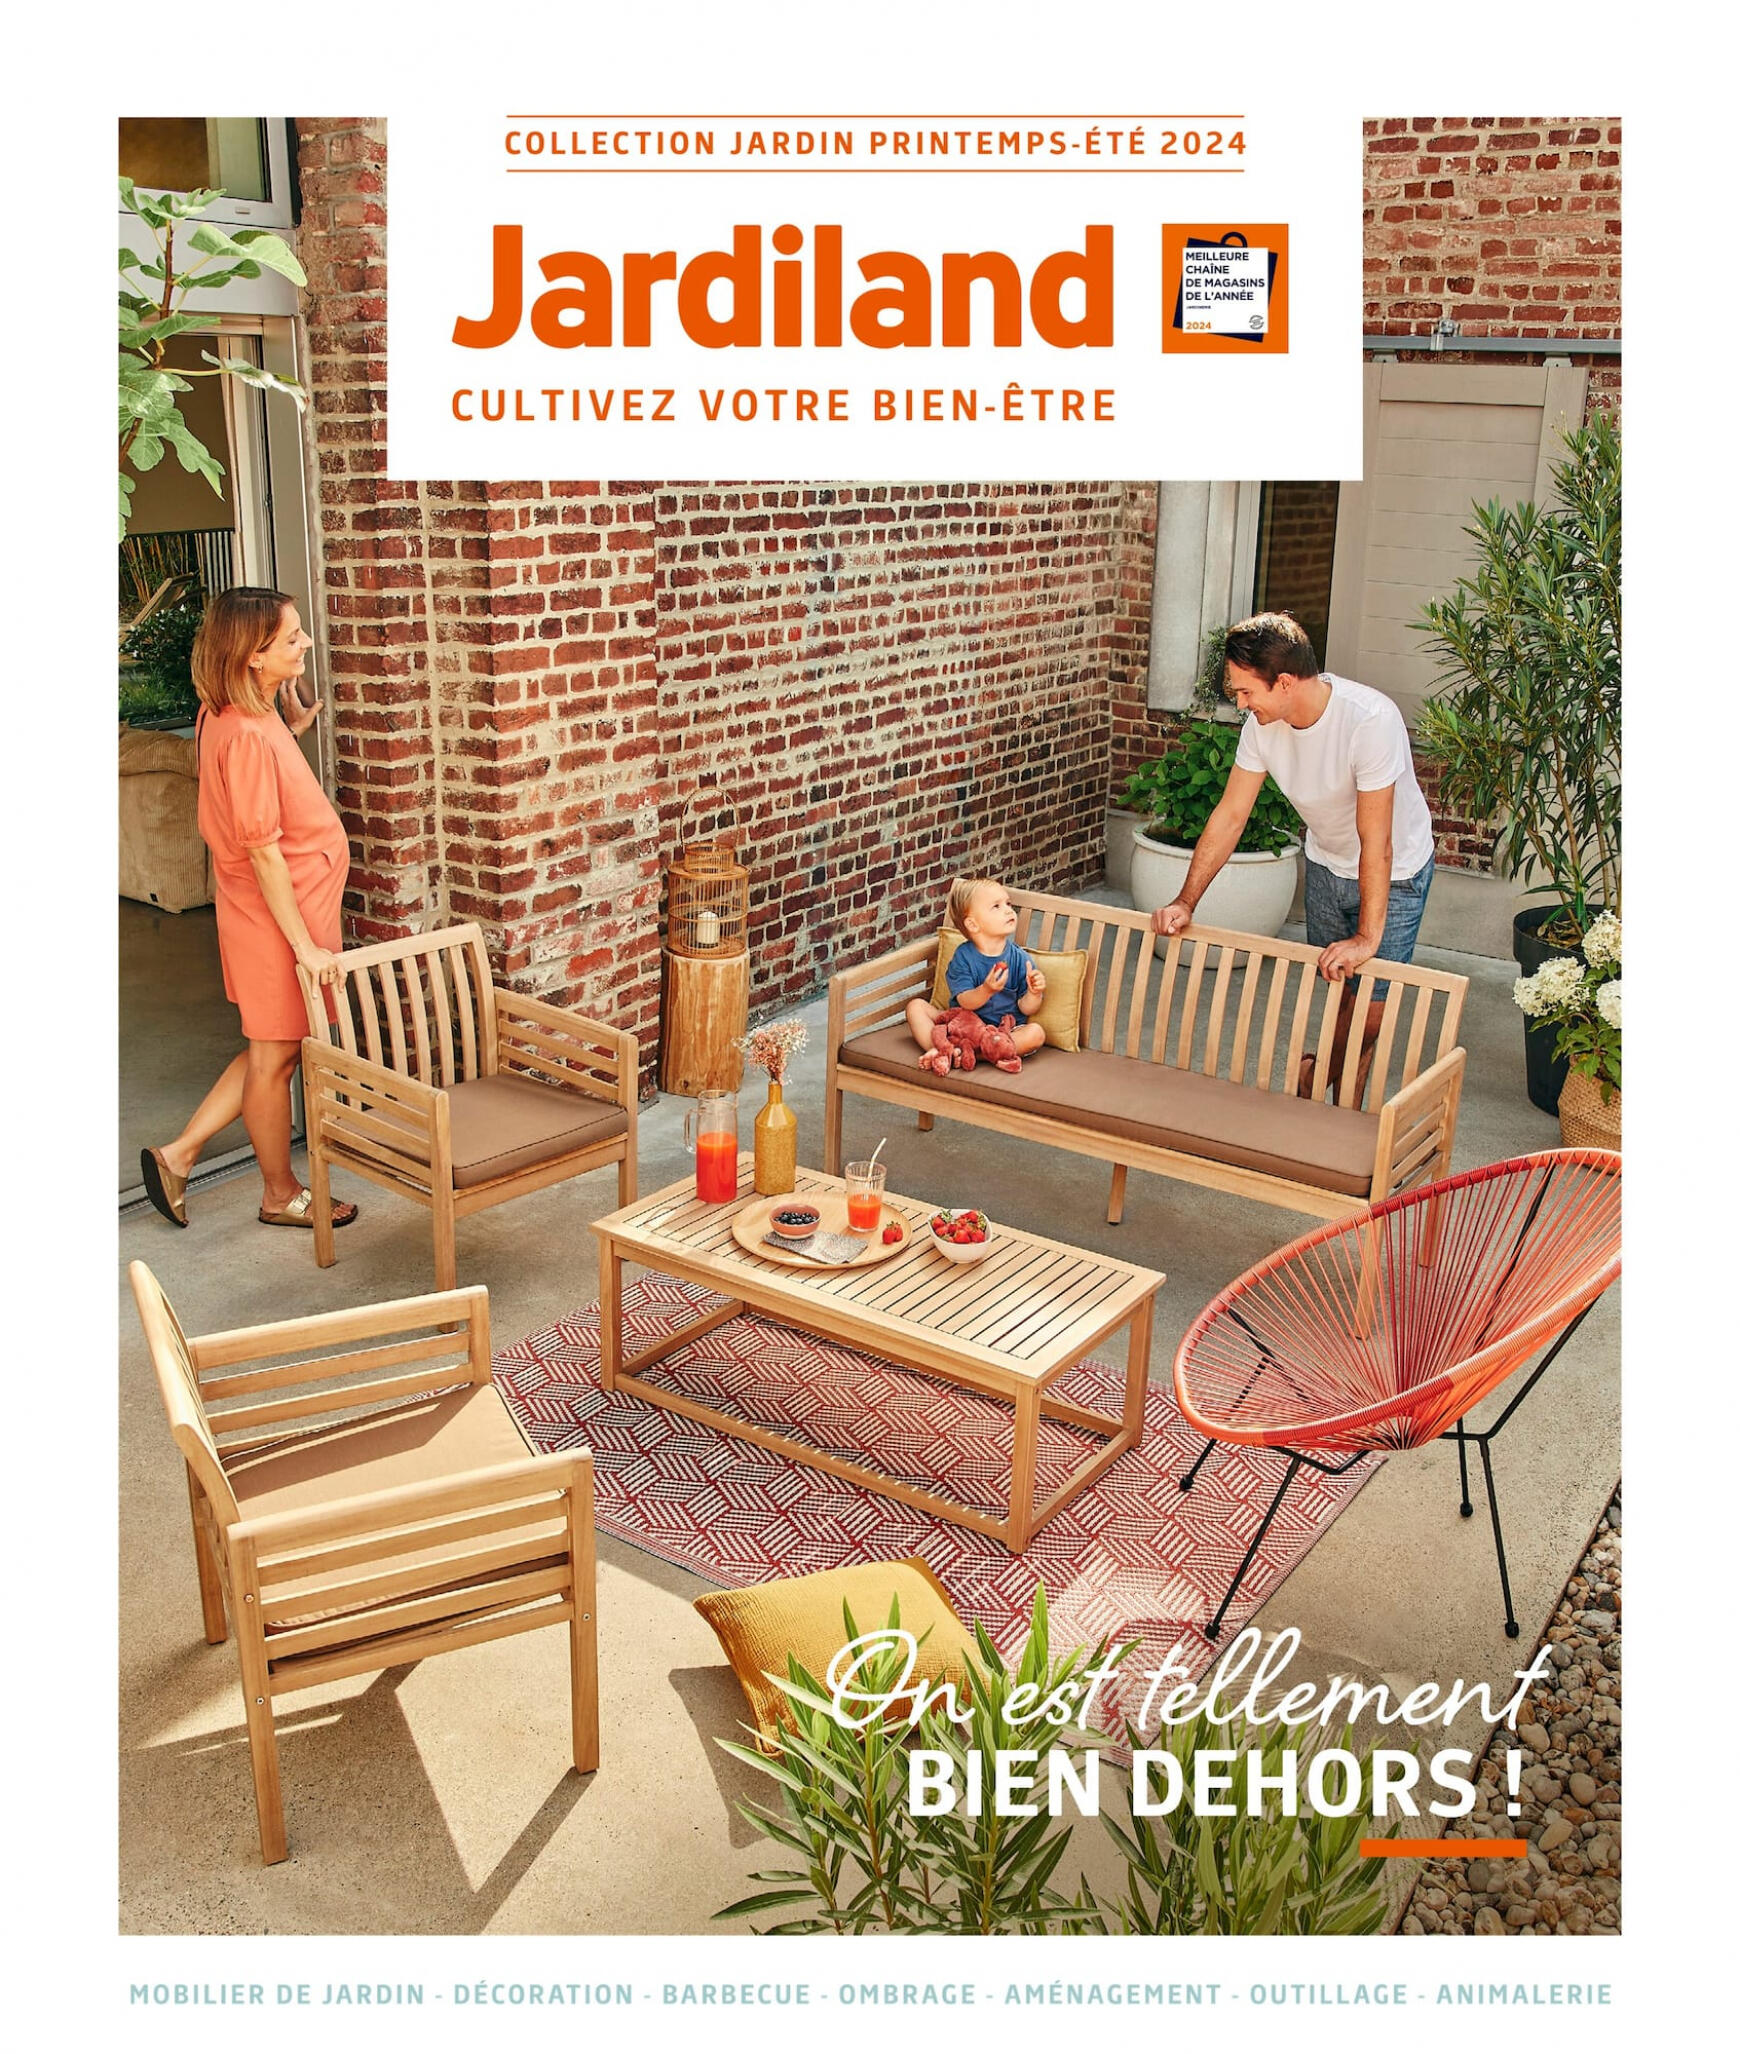 jardiland - Jardiland - On est tellement bien dehors ! valable à partir de 01.03.2024 - page: 1